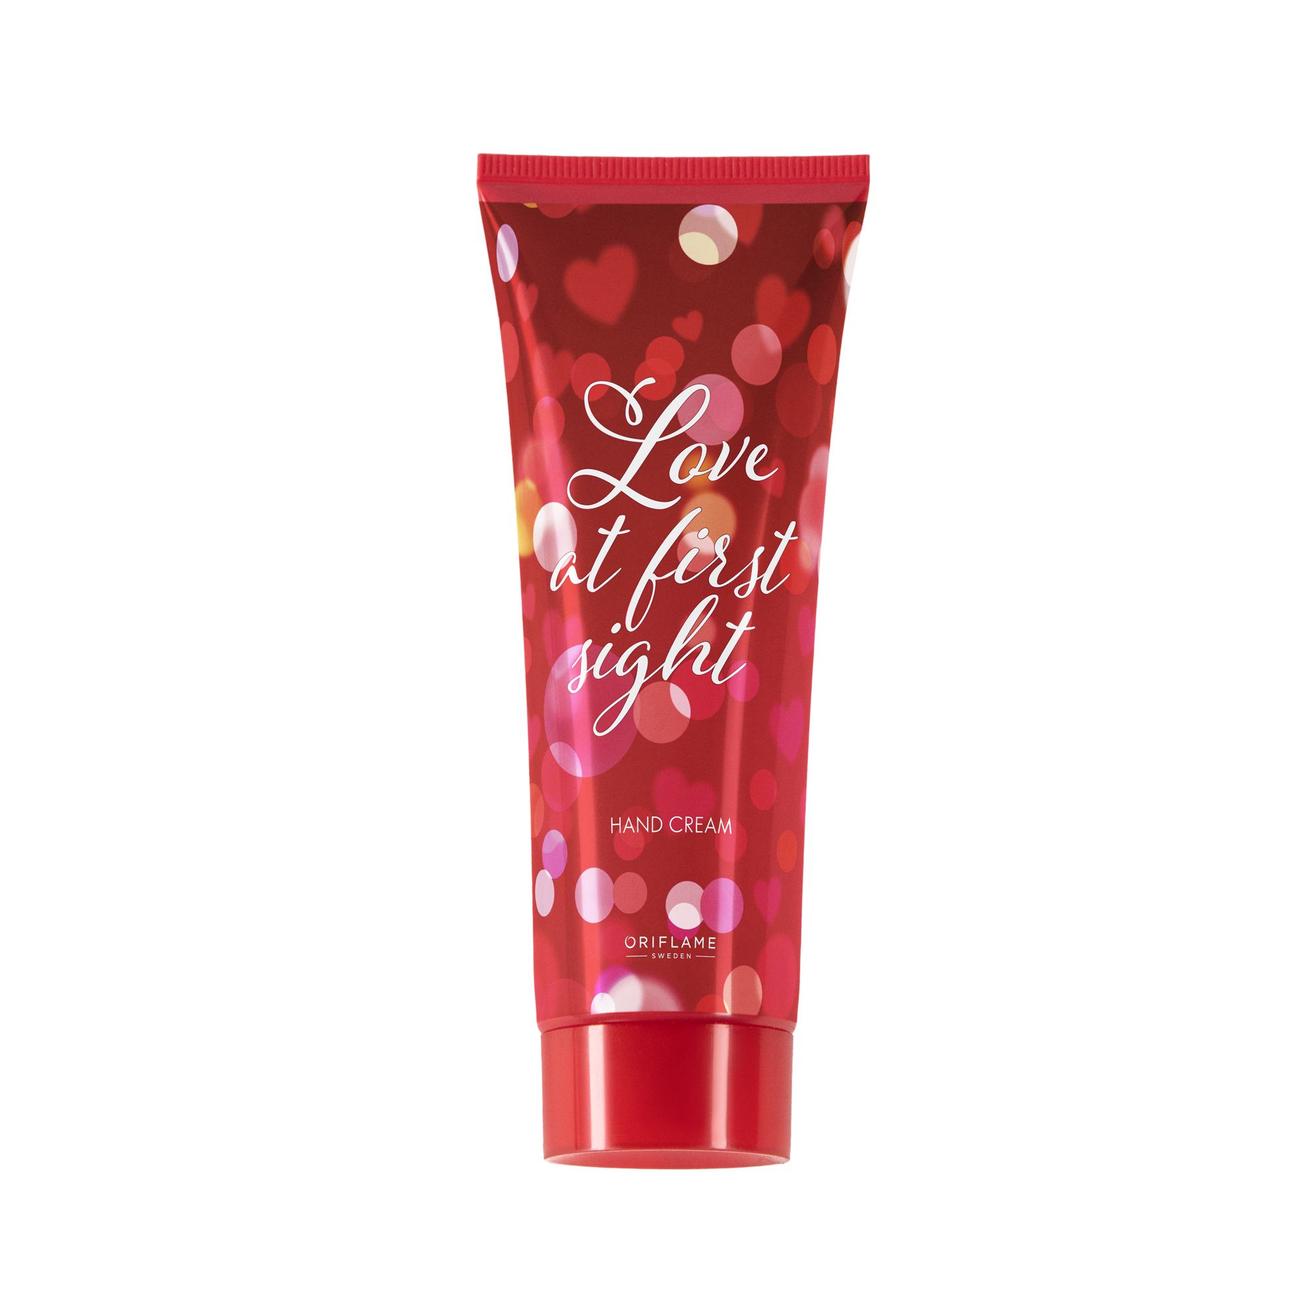 Aanbieding van Love At First Sight Hand Cream voor 5,99€ bij Oriflame